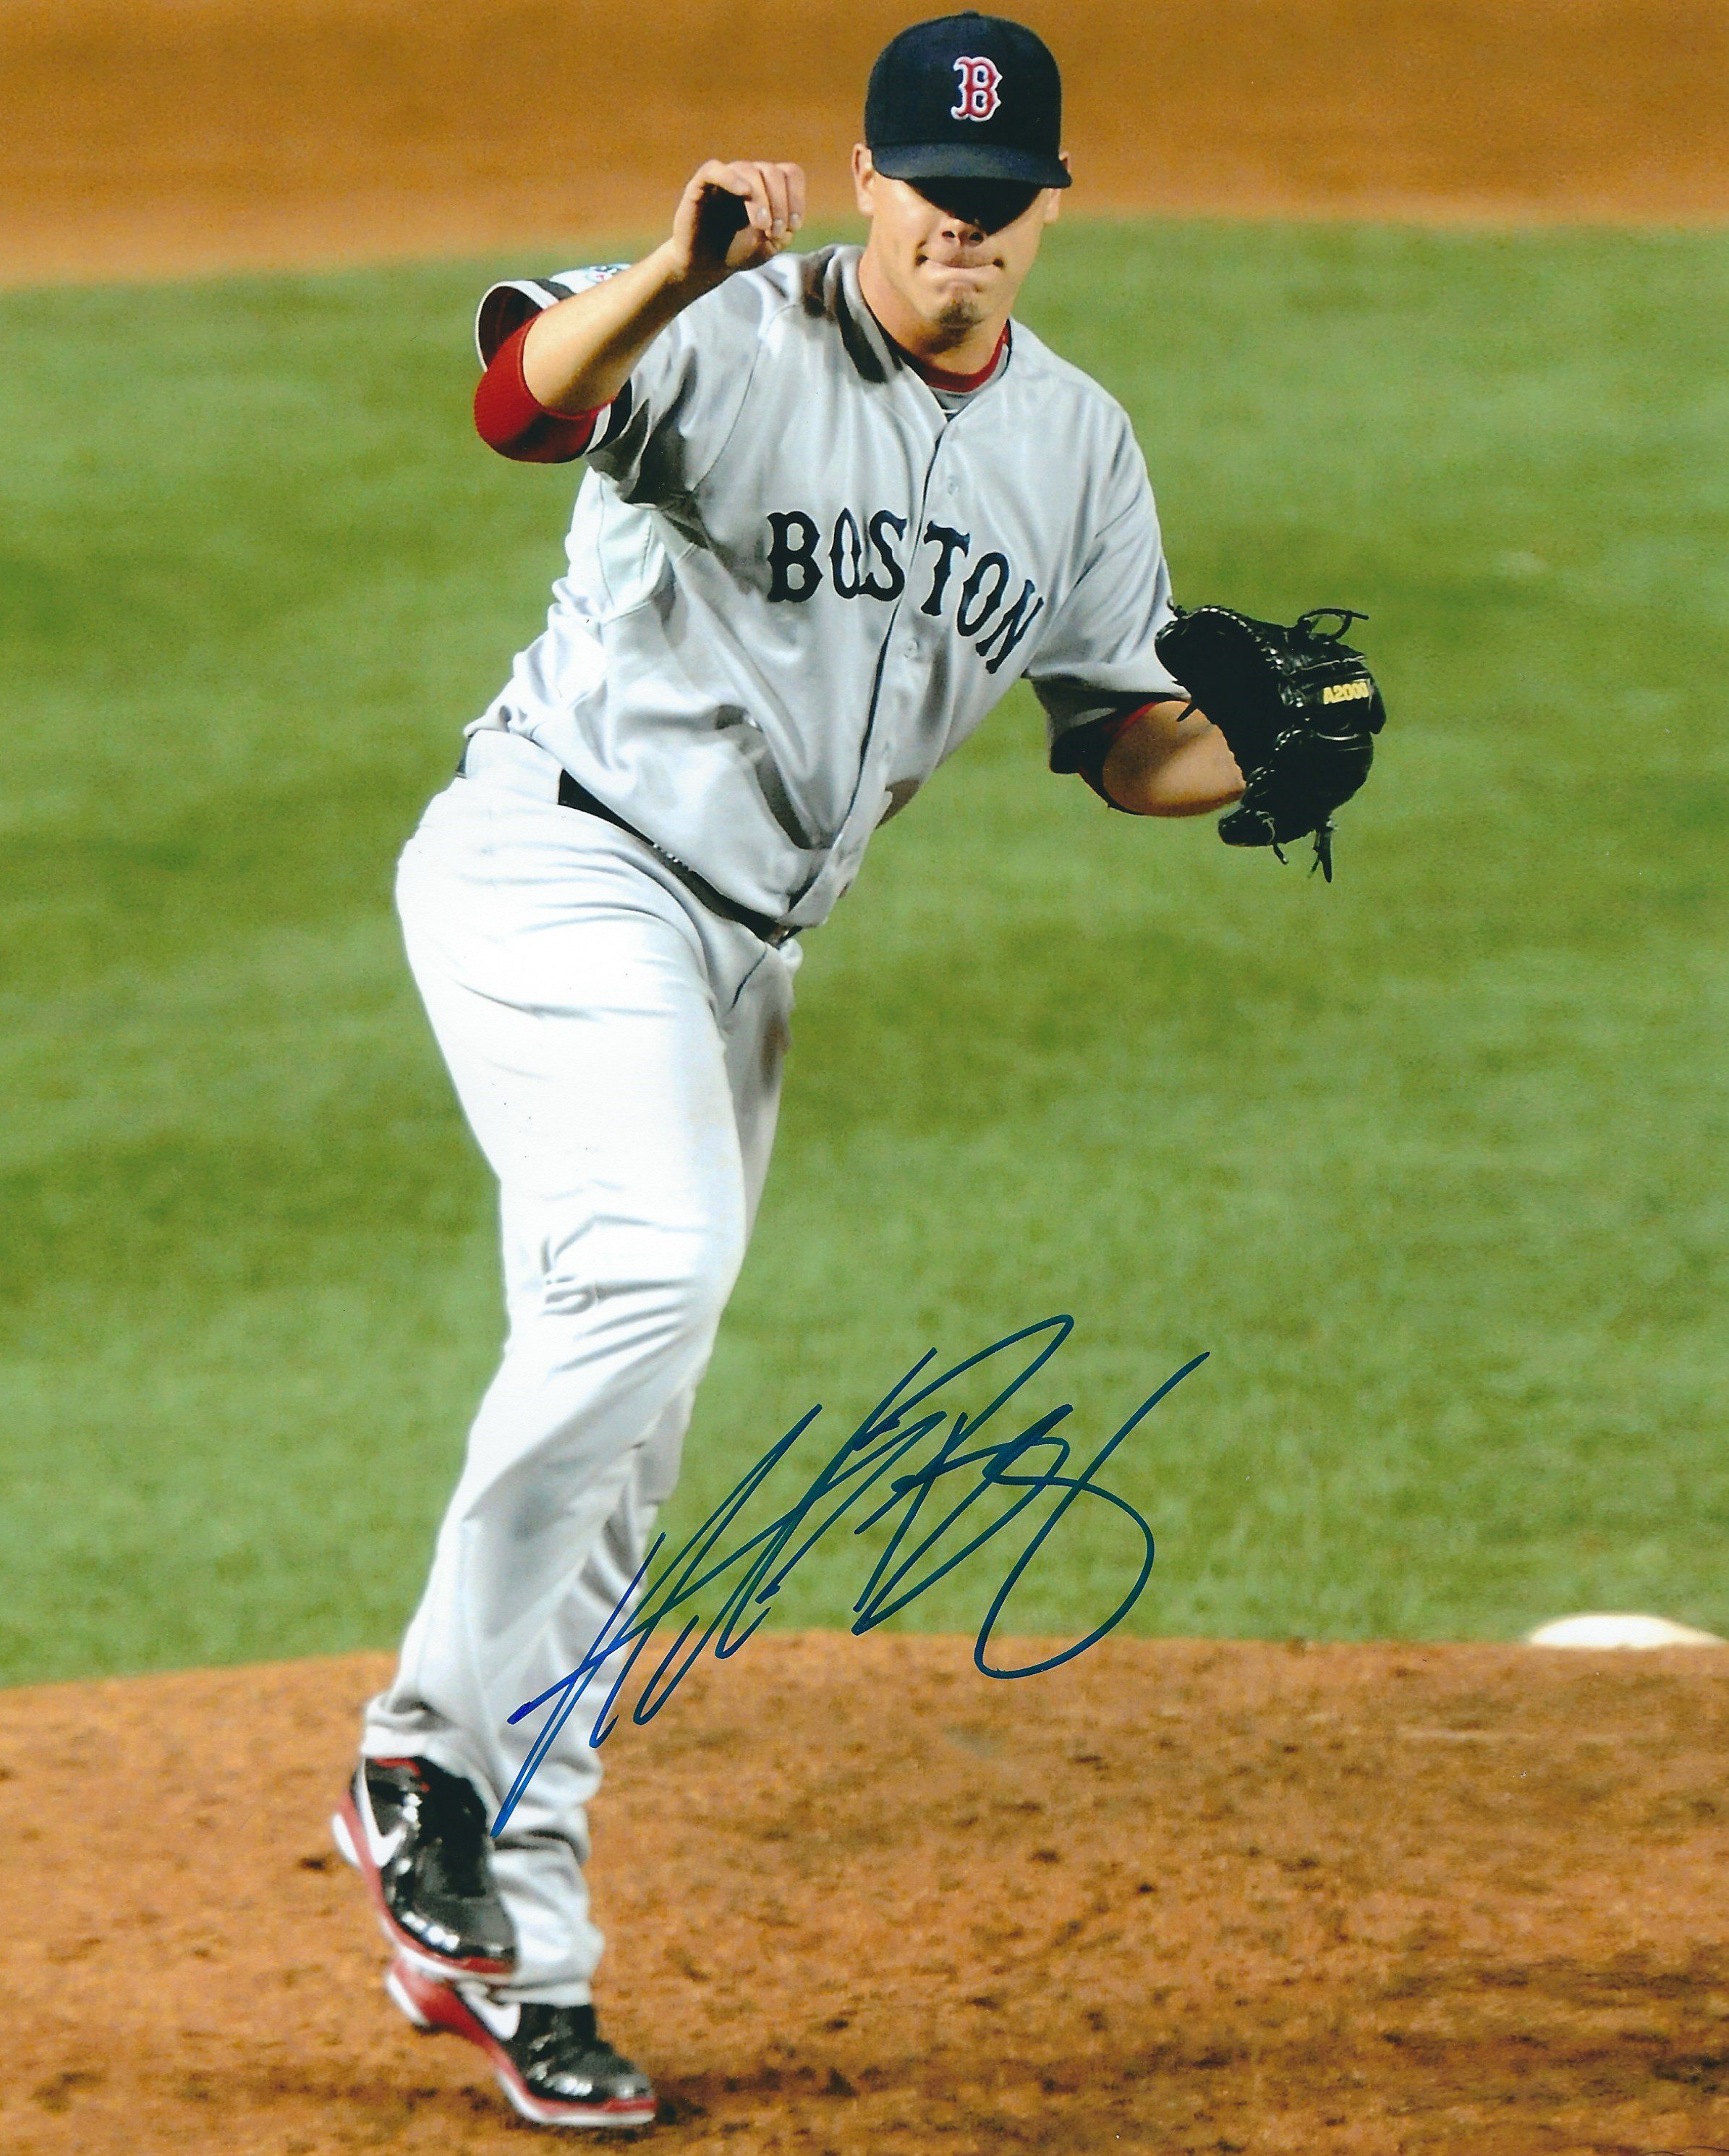 Bobby Doerr Signed Autographed 8X10 Photo Boston Red Sox HOF 86 JSA AB41612